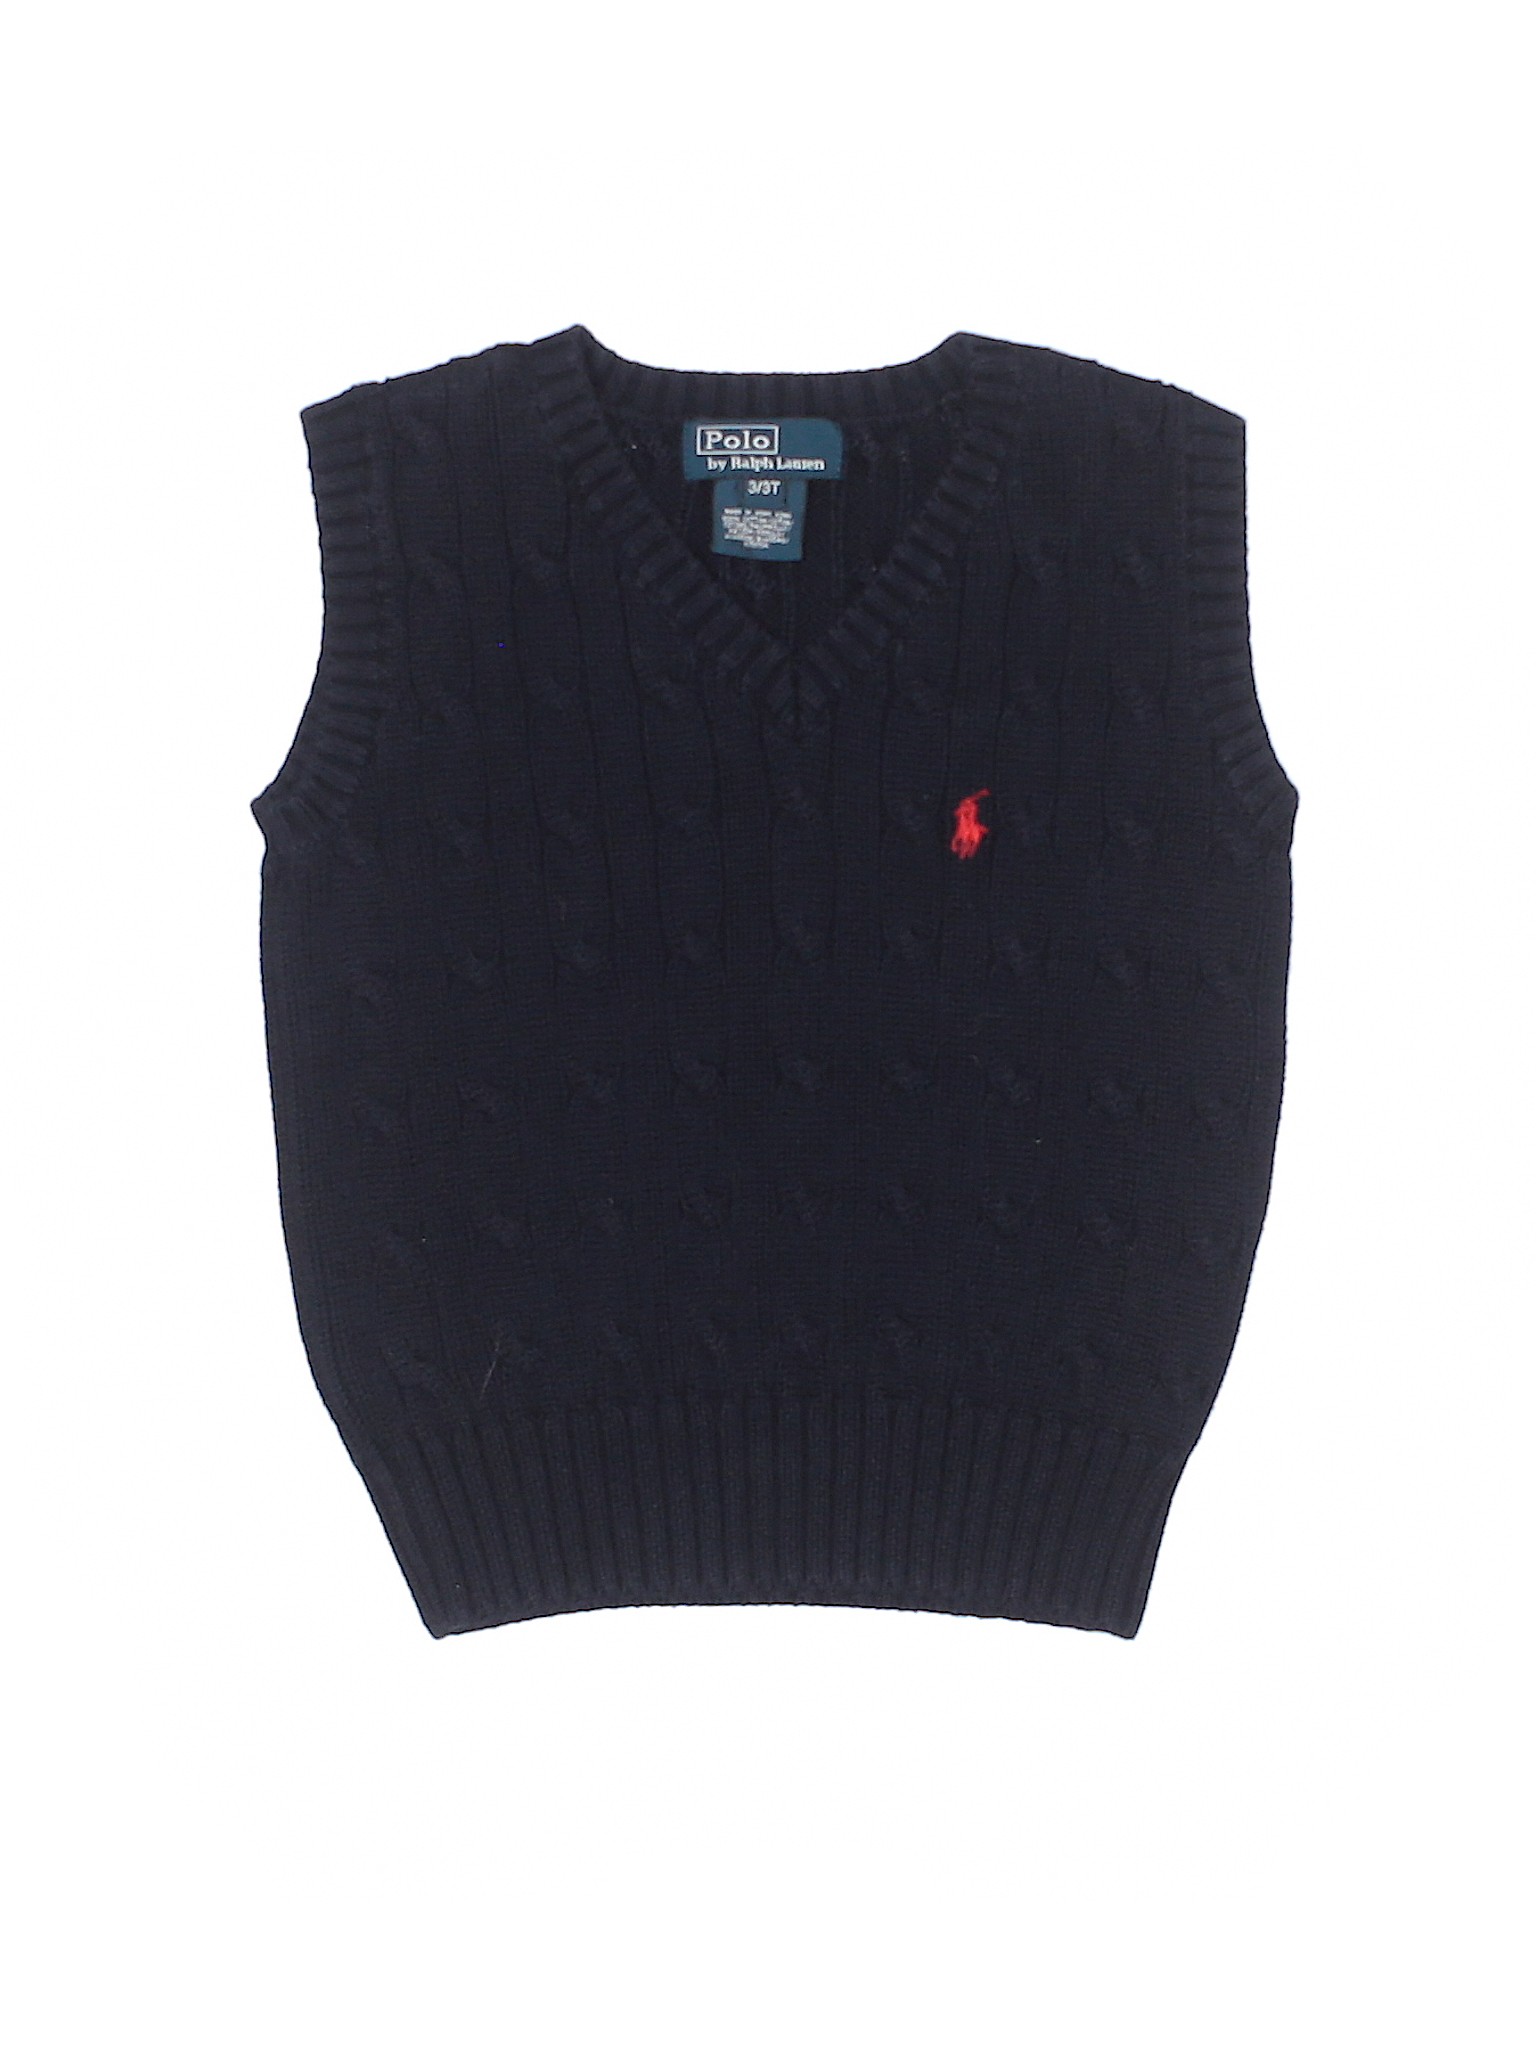 Polo by Ralph Lauren Boys Black Sweater Vest 3T | eBay